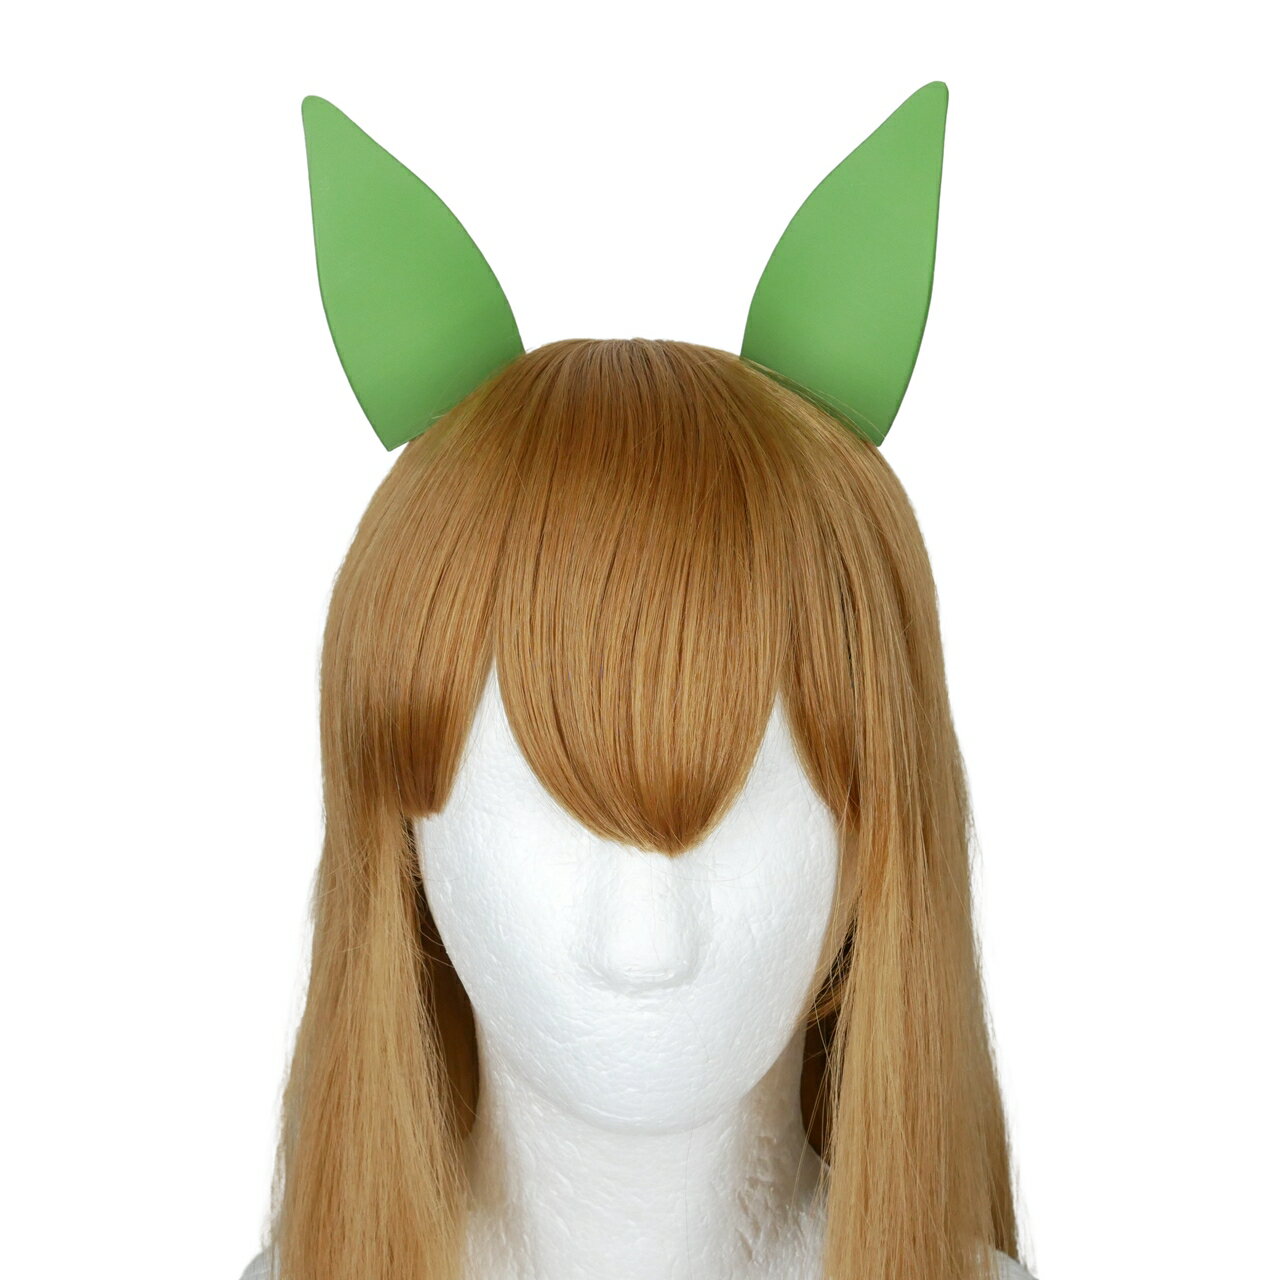 ウマ娘 サイレンススズカ 風 ウマ 耳カバー クリップタイプ 髪飾り ハロウィン コスプレ 3Dプリント造形 仮装アイテム